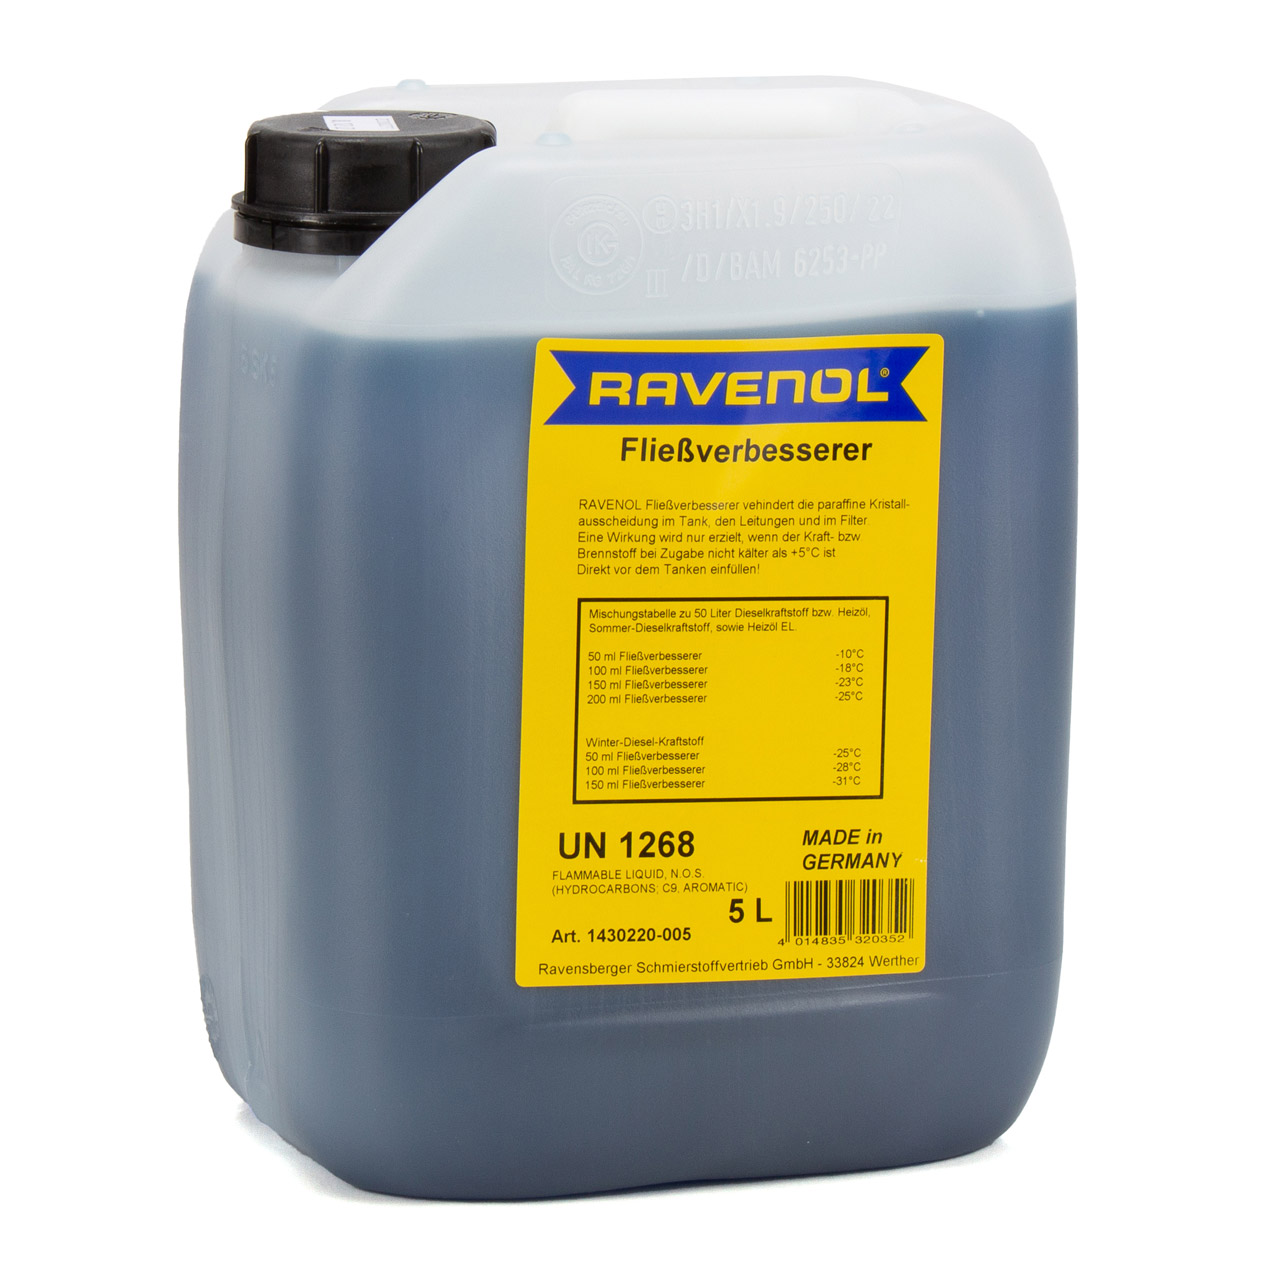 5L 5 Liter RAVENOL 1430220-005 Fließverbesserer 1:1000 Diesel Heizöl Frostschutz Frost Öl